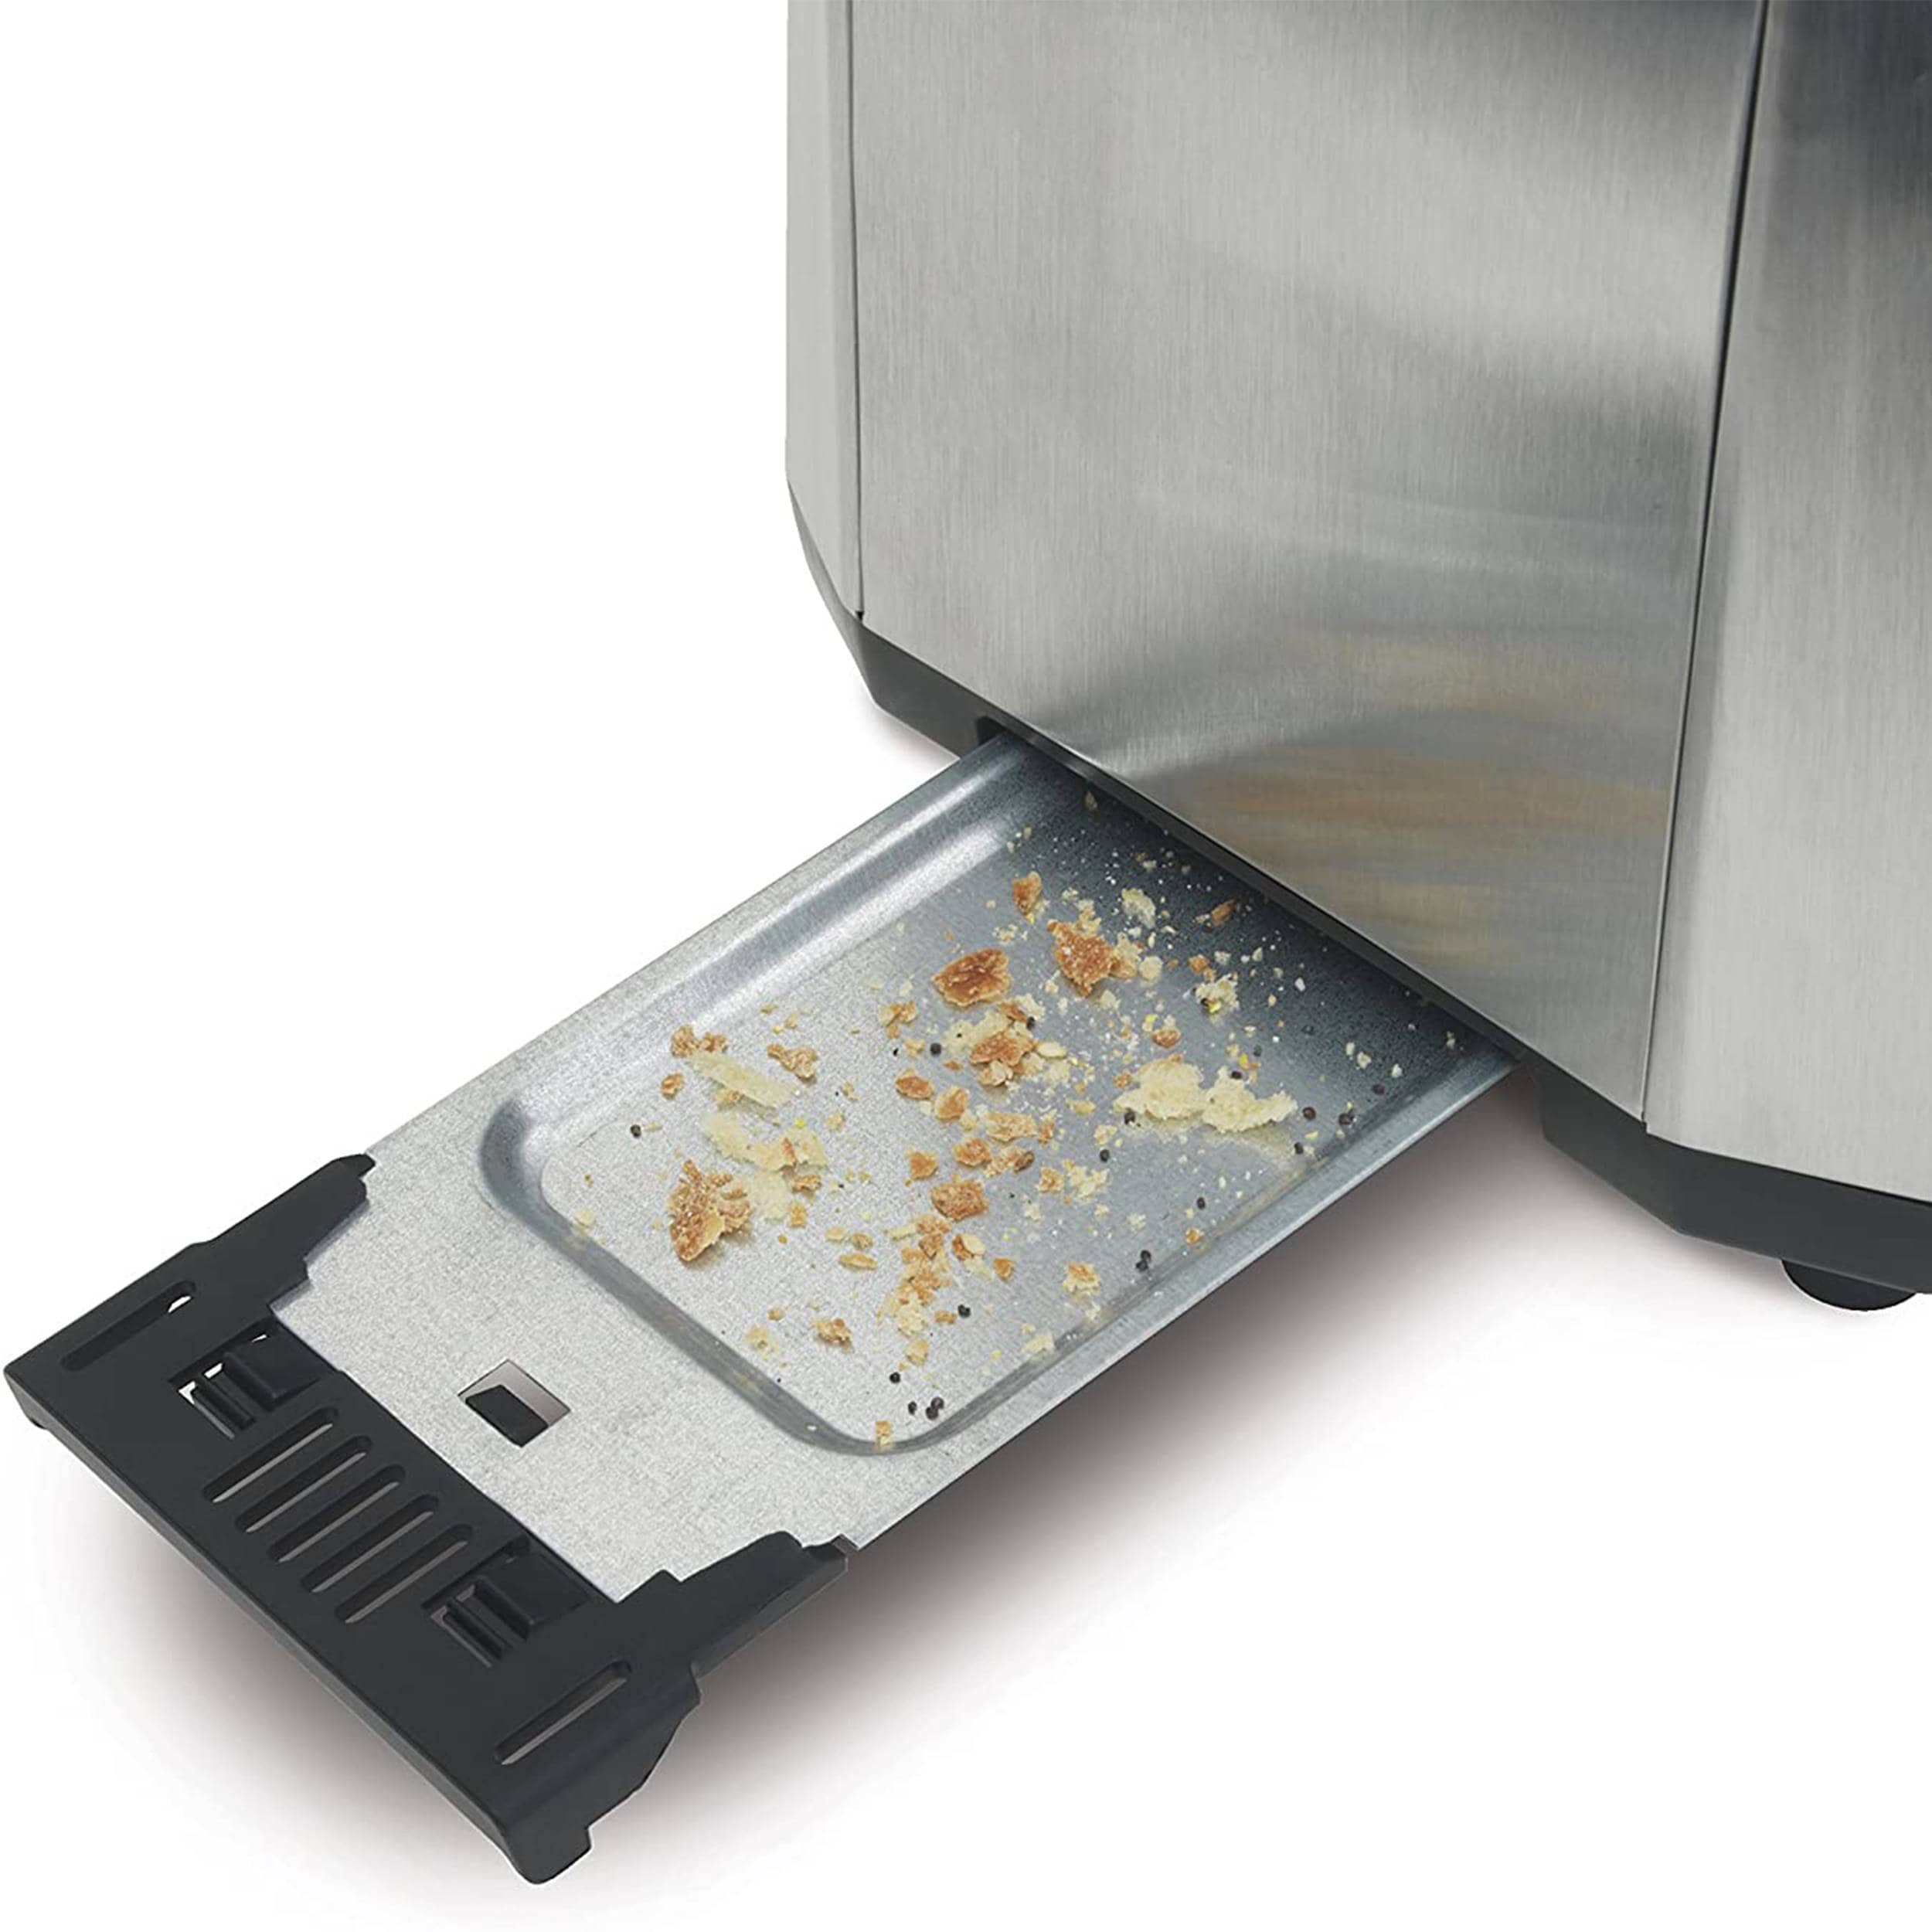 Hamilton Beach 2 Slice Toaster, Stainless Steel, Model 22782